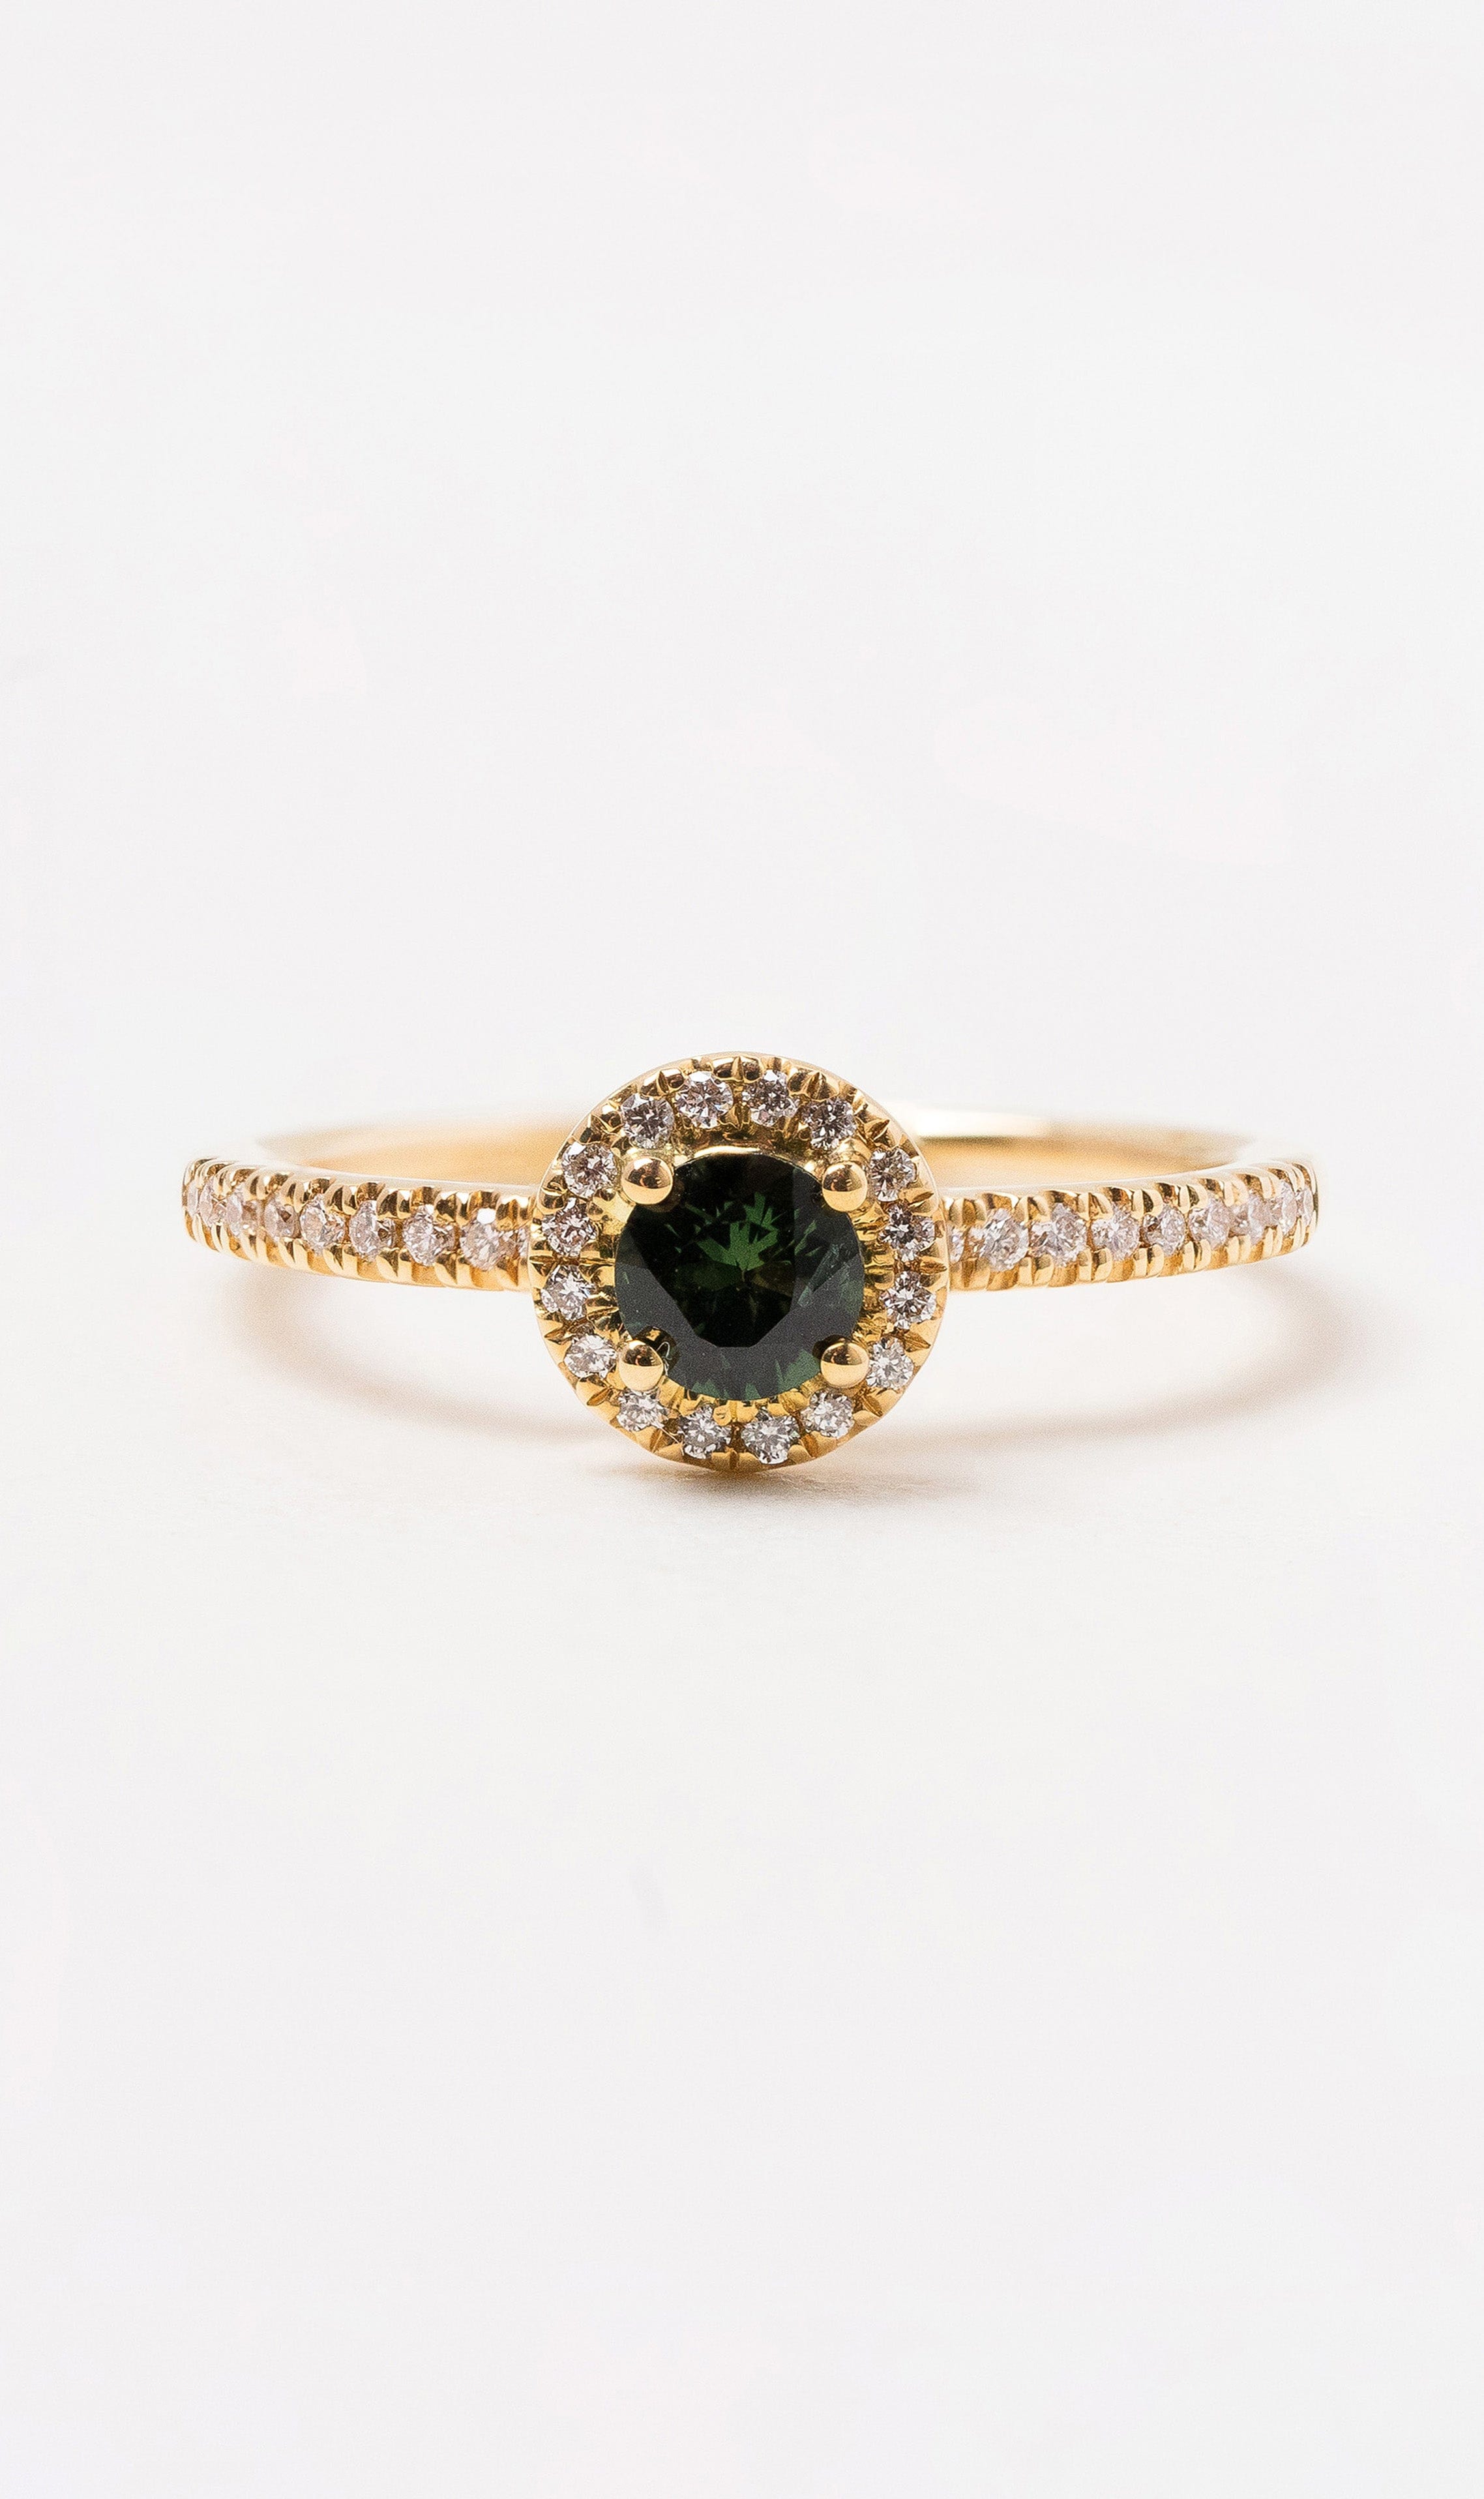 Hogans Family Jewellers 18K YG Australian Sapphire Ring